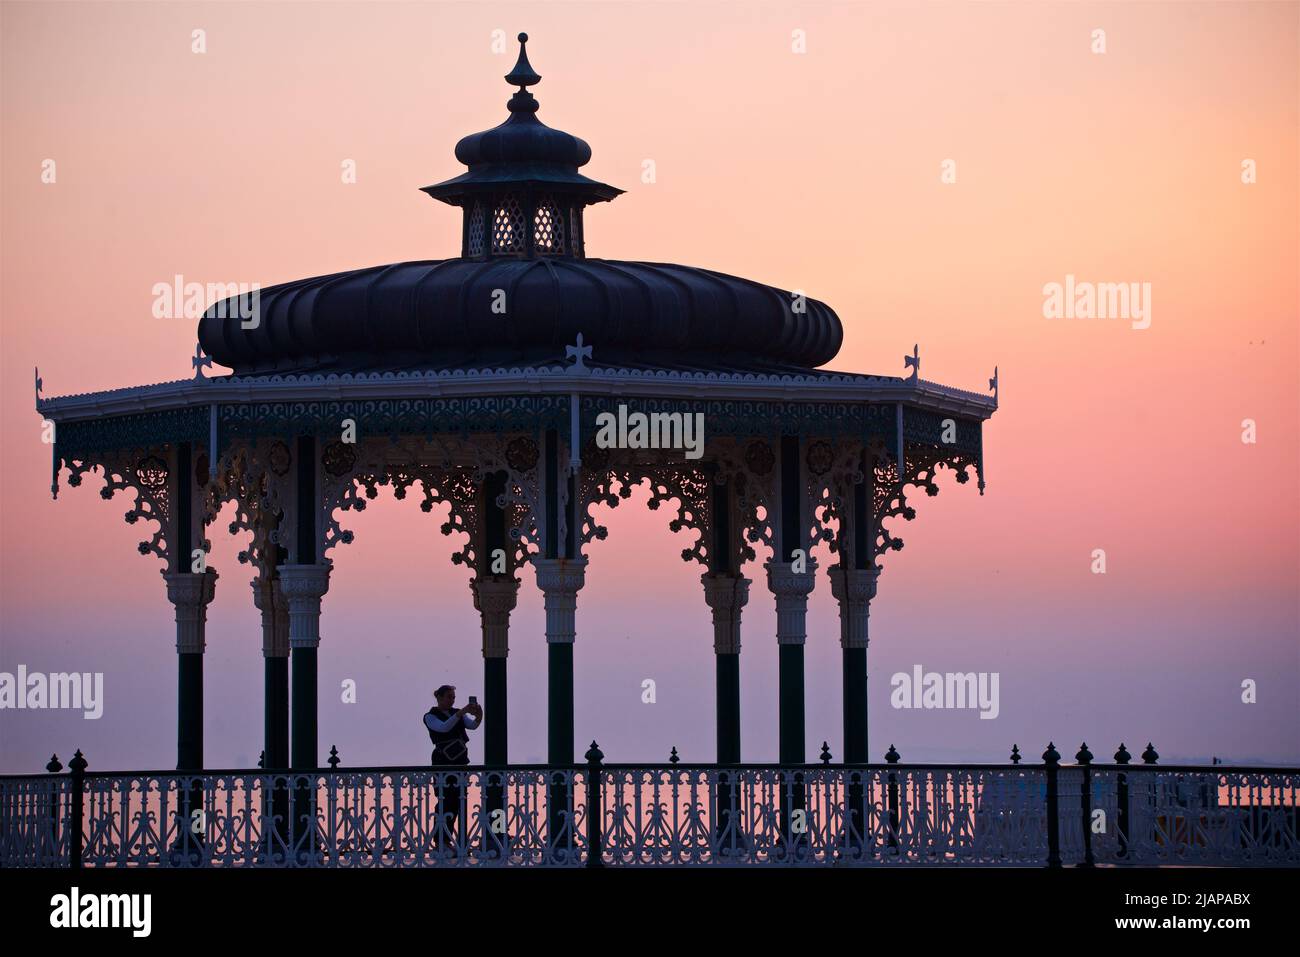 Kiosque à musique victorien de Brighton. Brighton & Hove, East Sussex, Angleterre. Ciel rose sombre au crépuscule. Banque D'Images